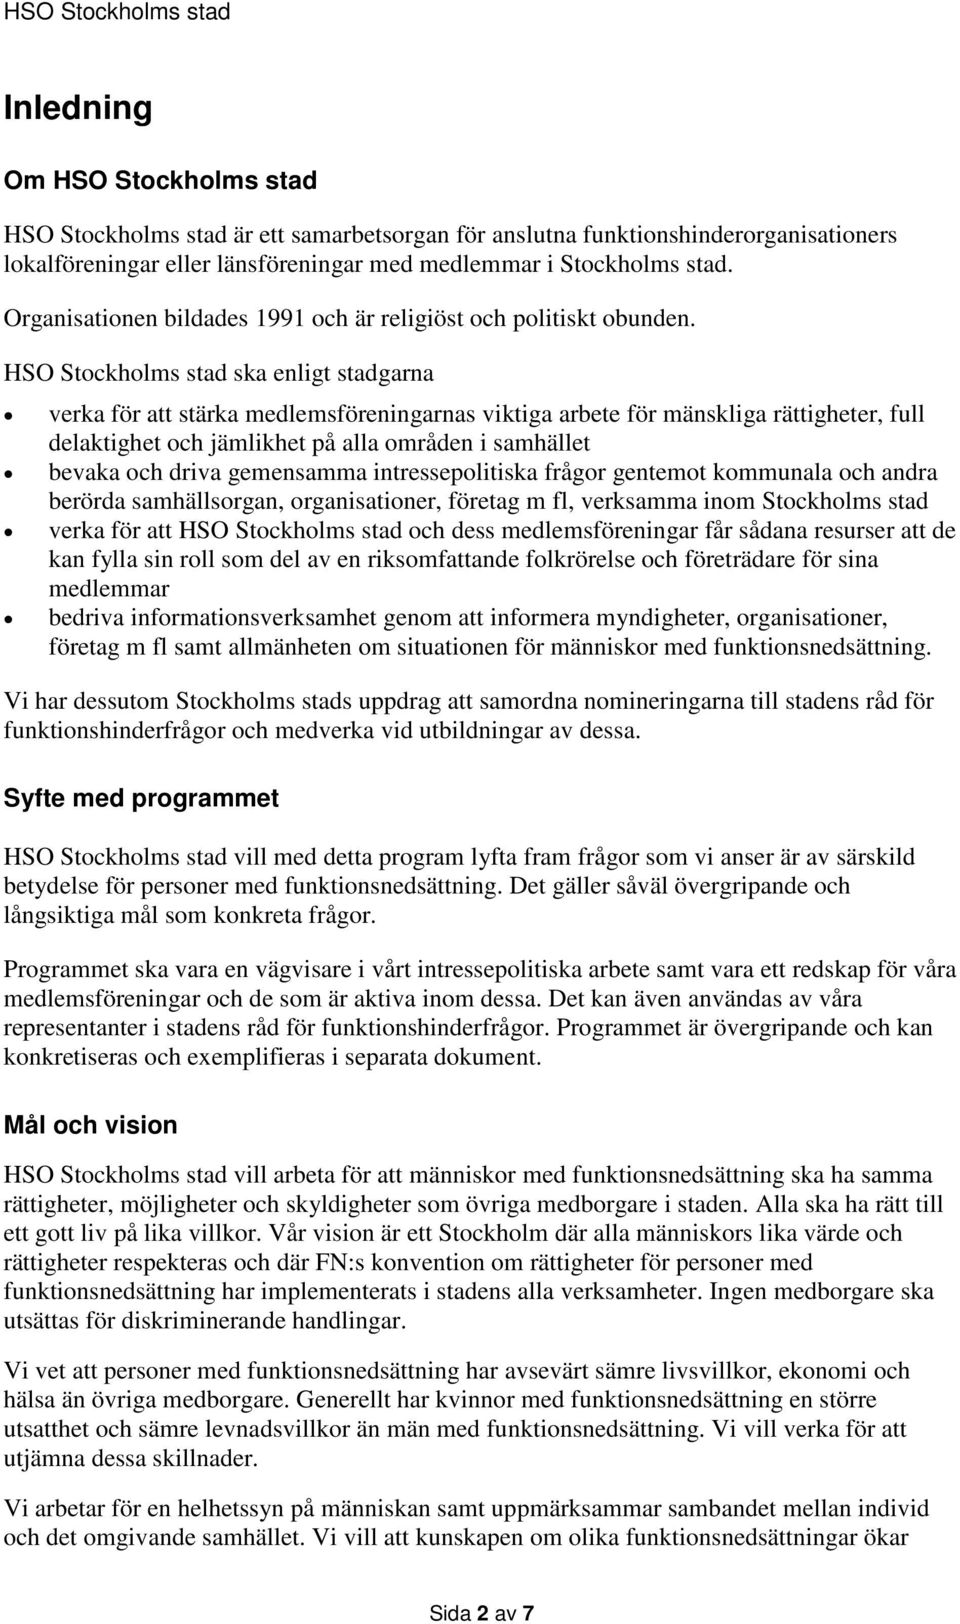 HSO Stockholms stad ska enligt stadgarna verka för att stärka medlemsföreningarnas viktiga arbete för mänskliga rättigheter, full delaktighet och jämlikhet på alla områden i samhället bevaka och